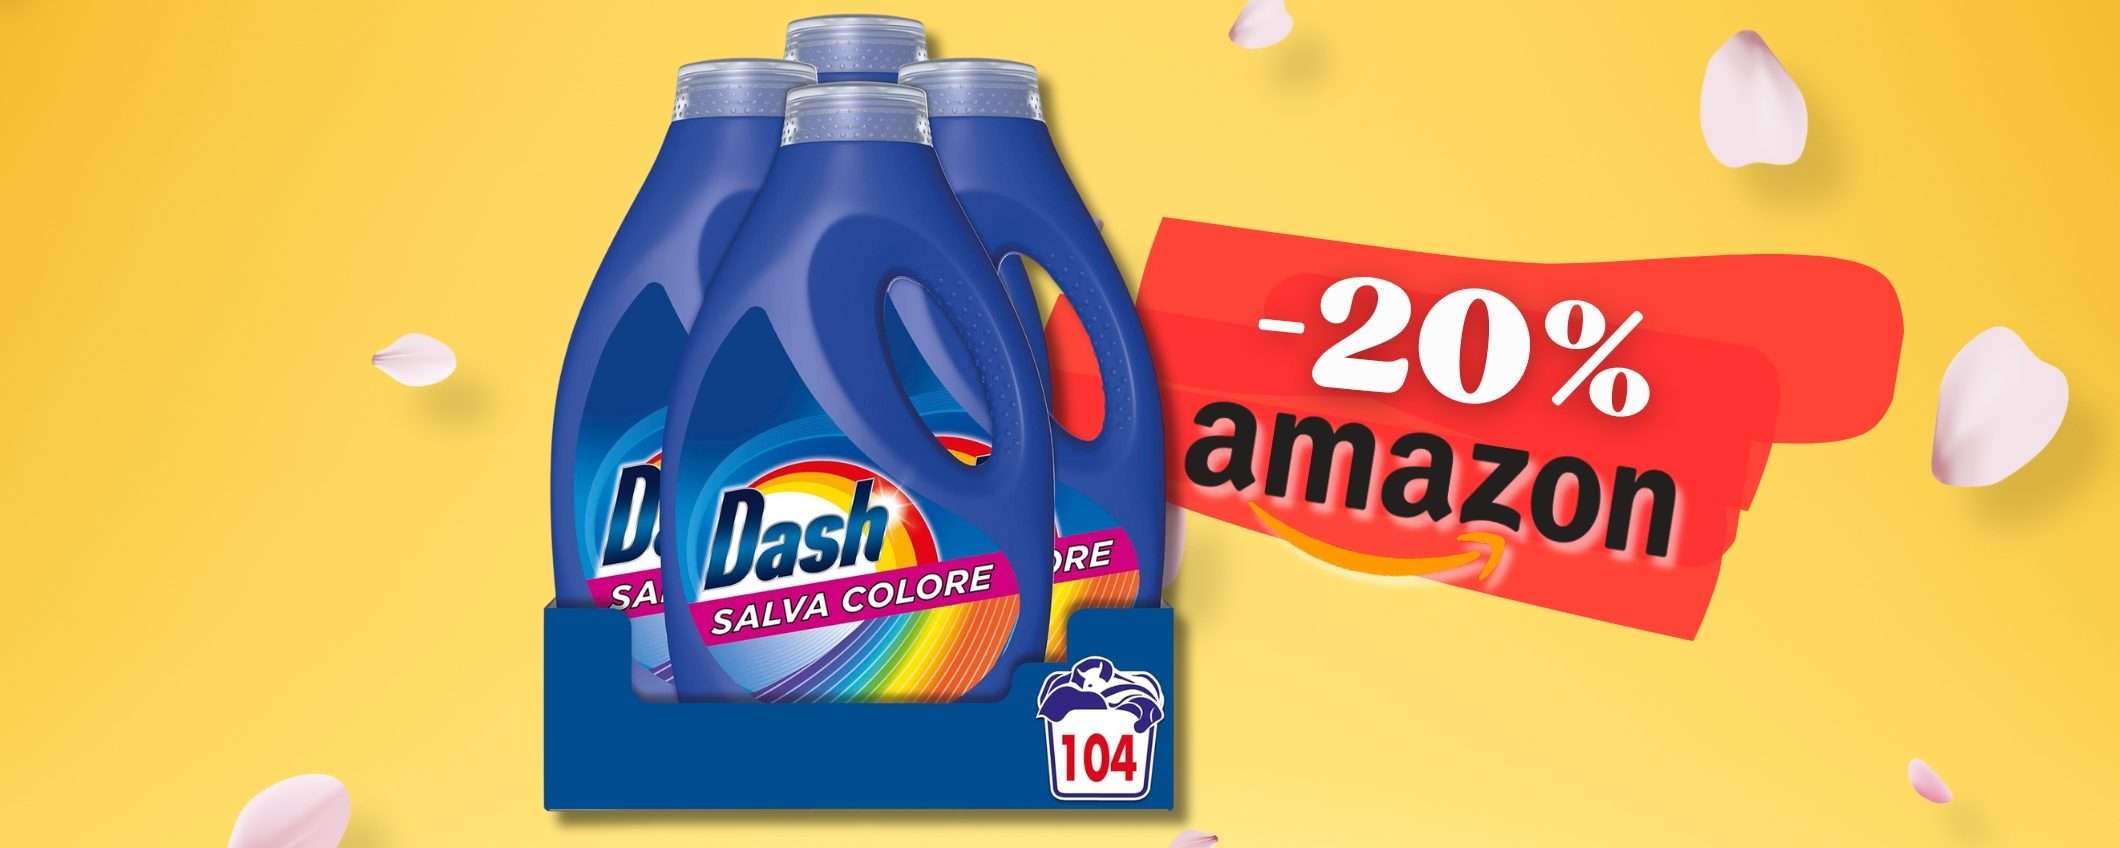 DASH liquido per bucato PROFUMATISSIMO: 104 lavaggi scontati al 20%